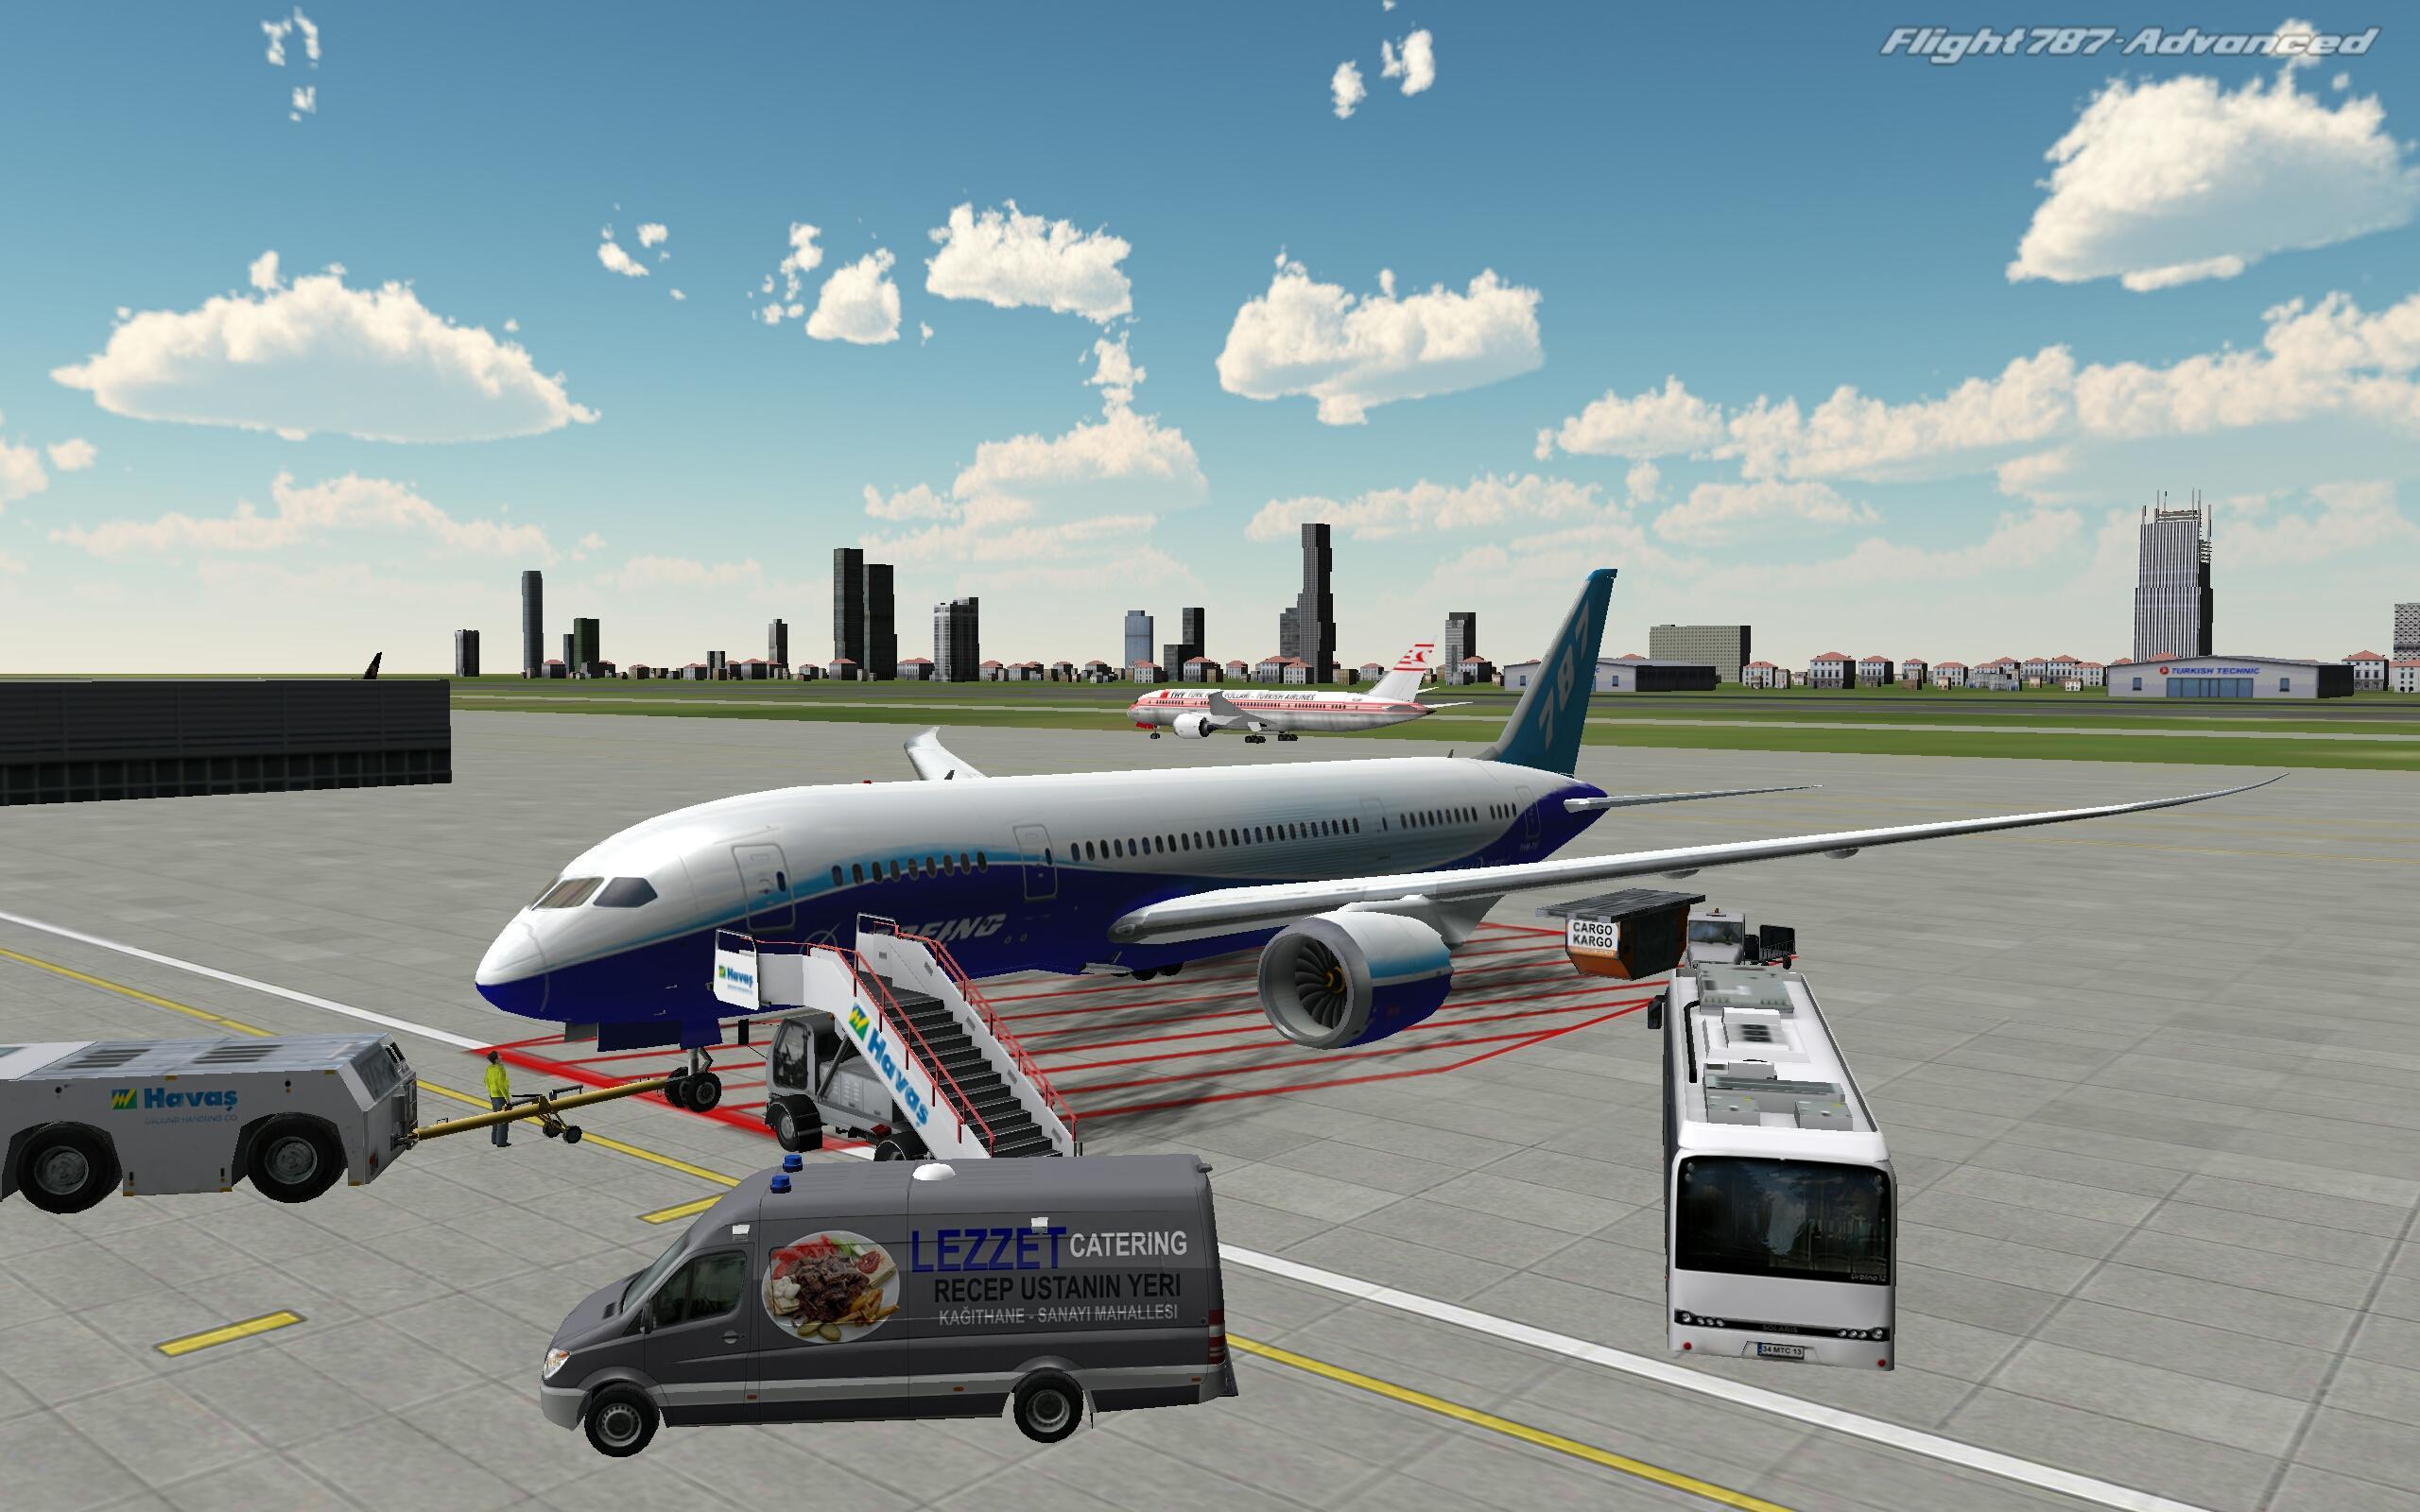 Много игр про самолет. Flight 787 - Advanced. Реал Флайт симулятор. Авиасимулятор ВДНХ. Симулятор самолета пассажирского.